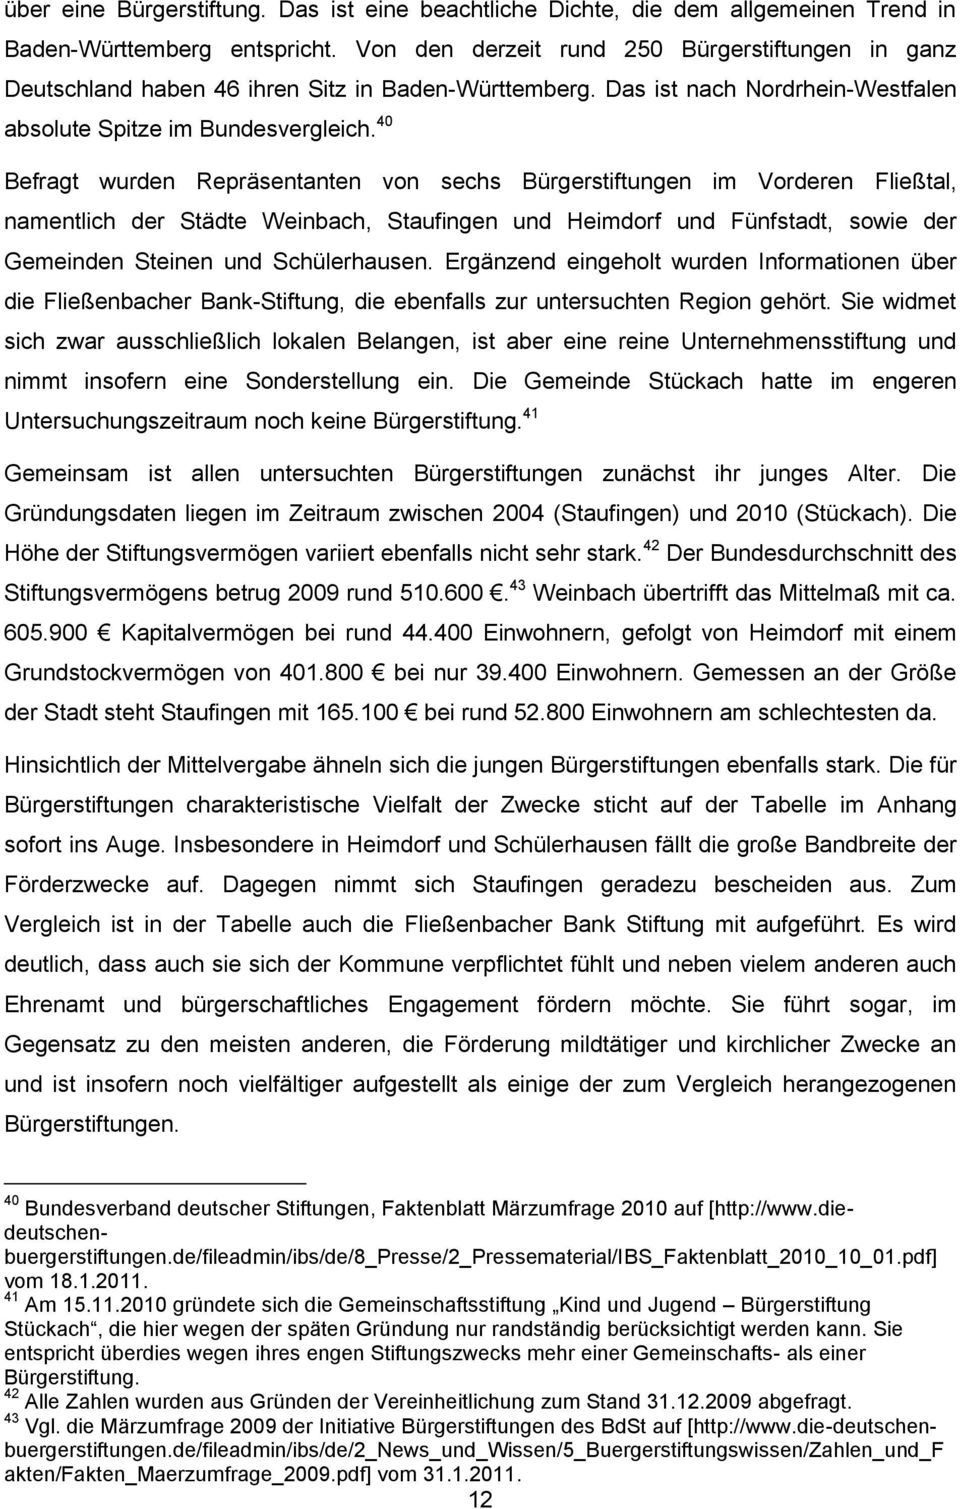 40 Befragt wurden Repräsentanten von sechs Bürgerstiftungen im Vorderen Fließtal, namentlich der Städte Weinbach, Staufingen und Heimdorf und Fünfstadt, sowie der Gemeinden Steinen und Schülerhausen.